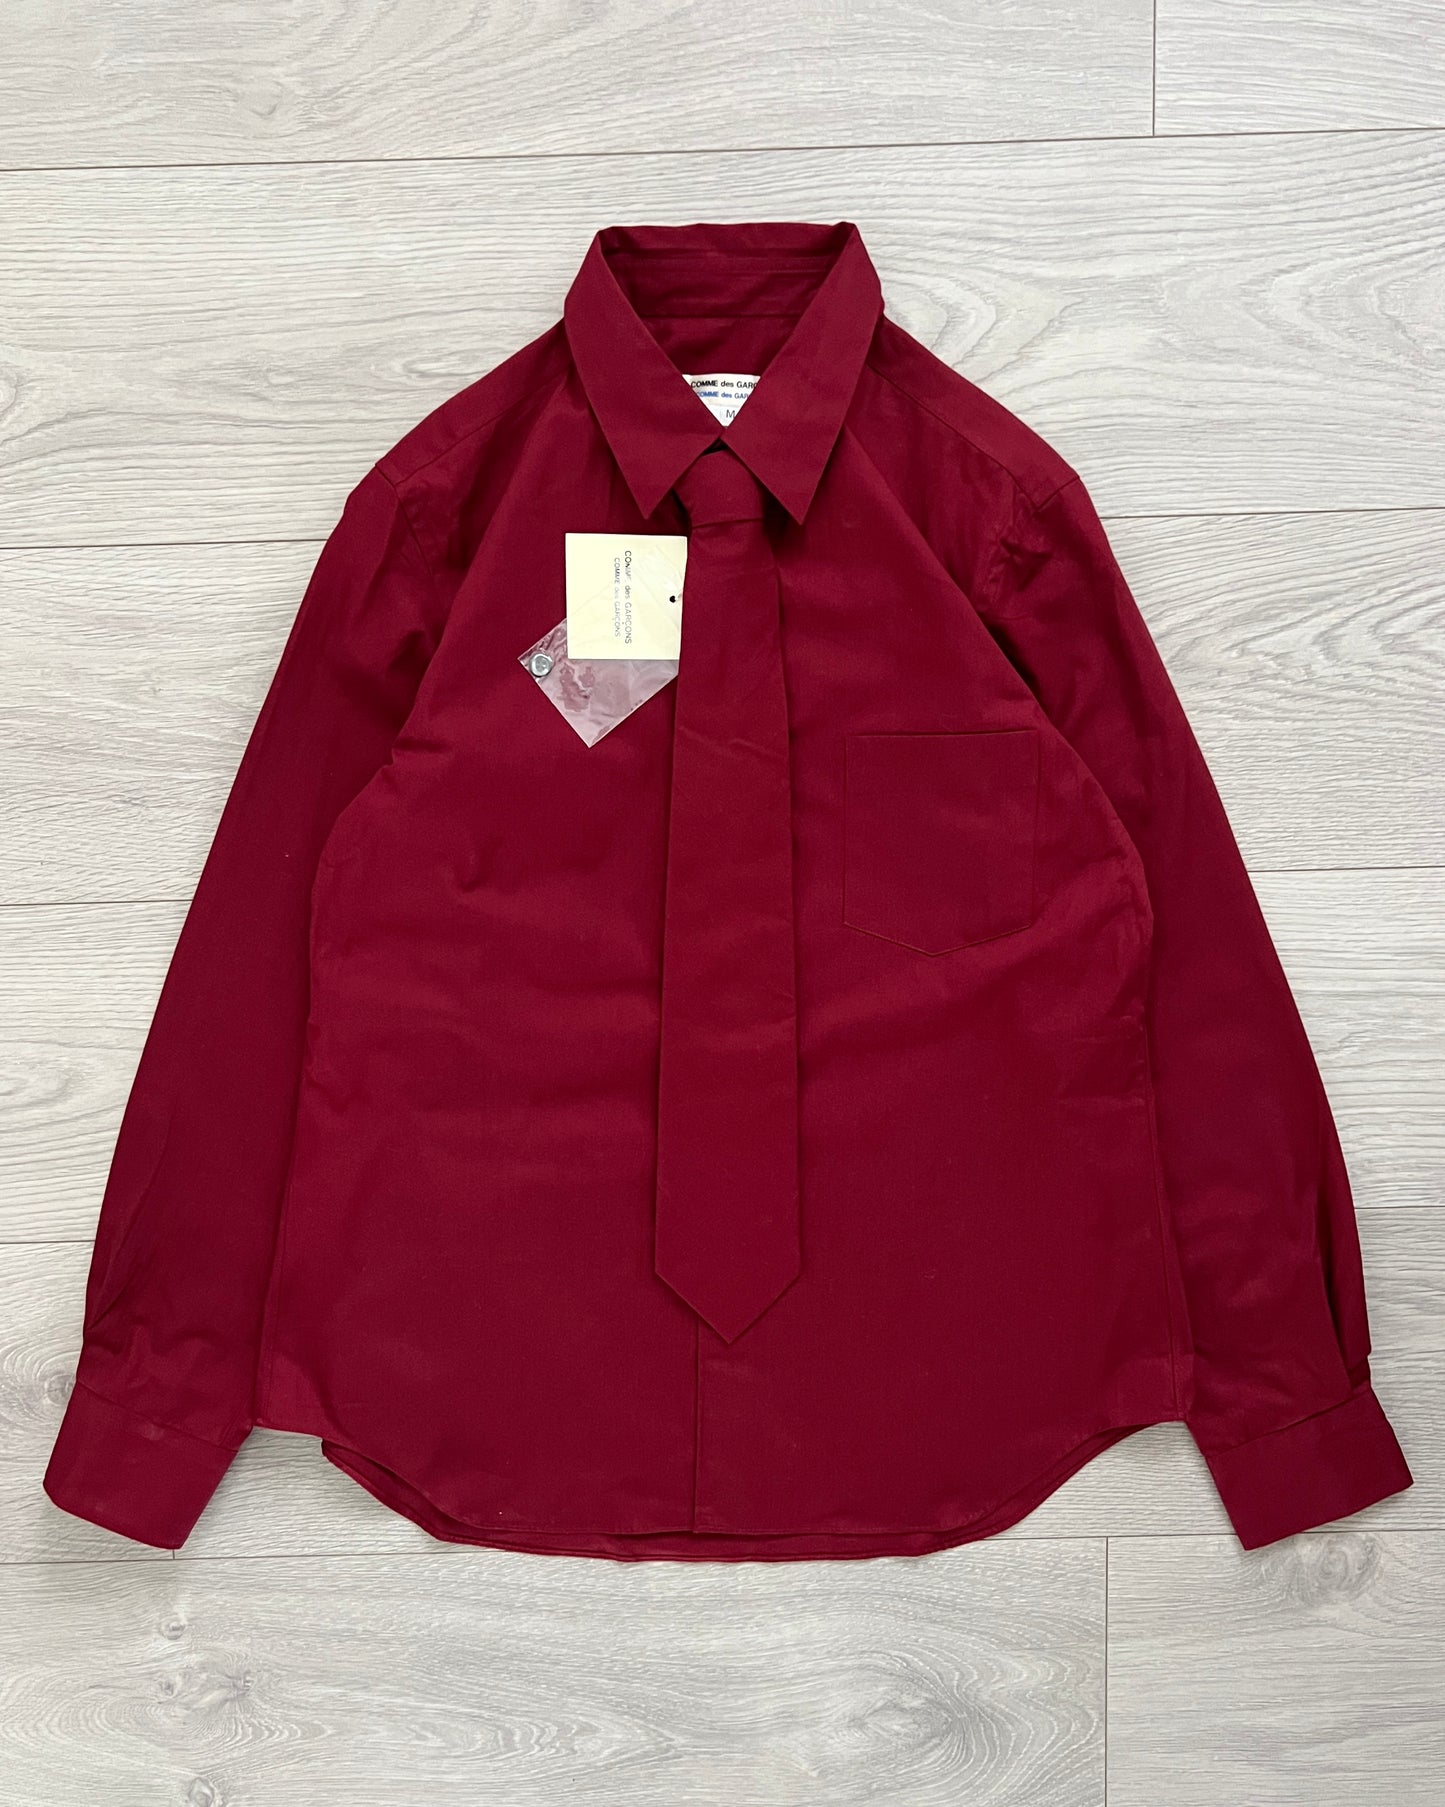 Comme Des Garcons Vintage Burgundy Shirt & Tie - Size S